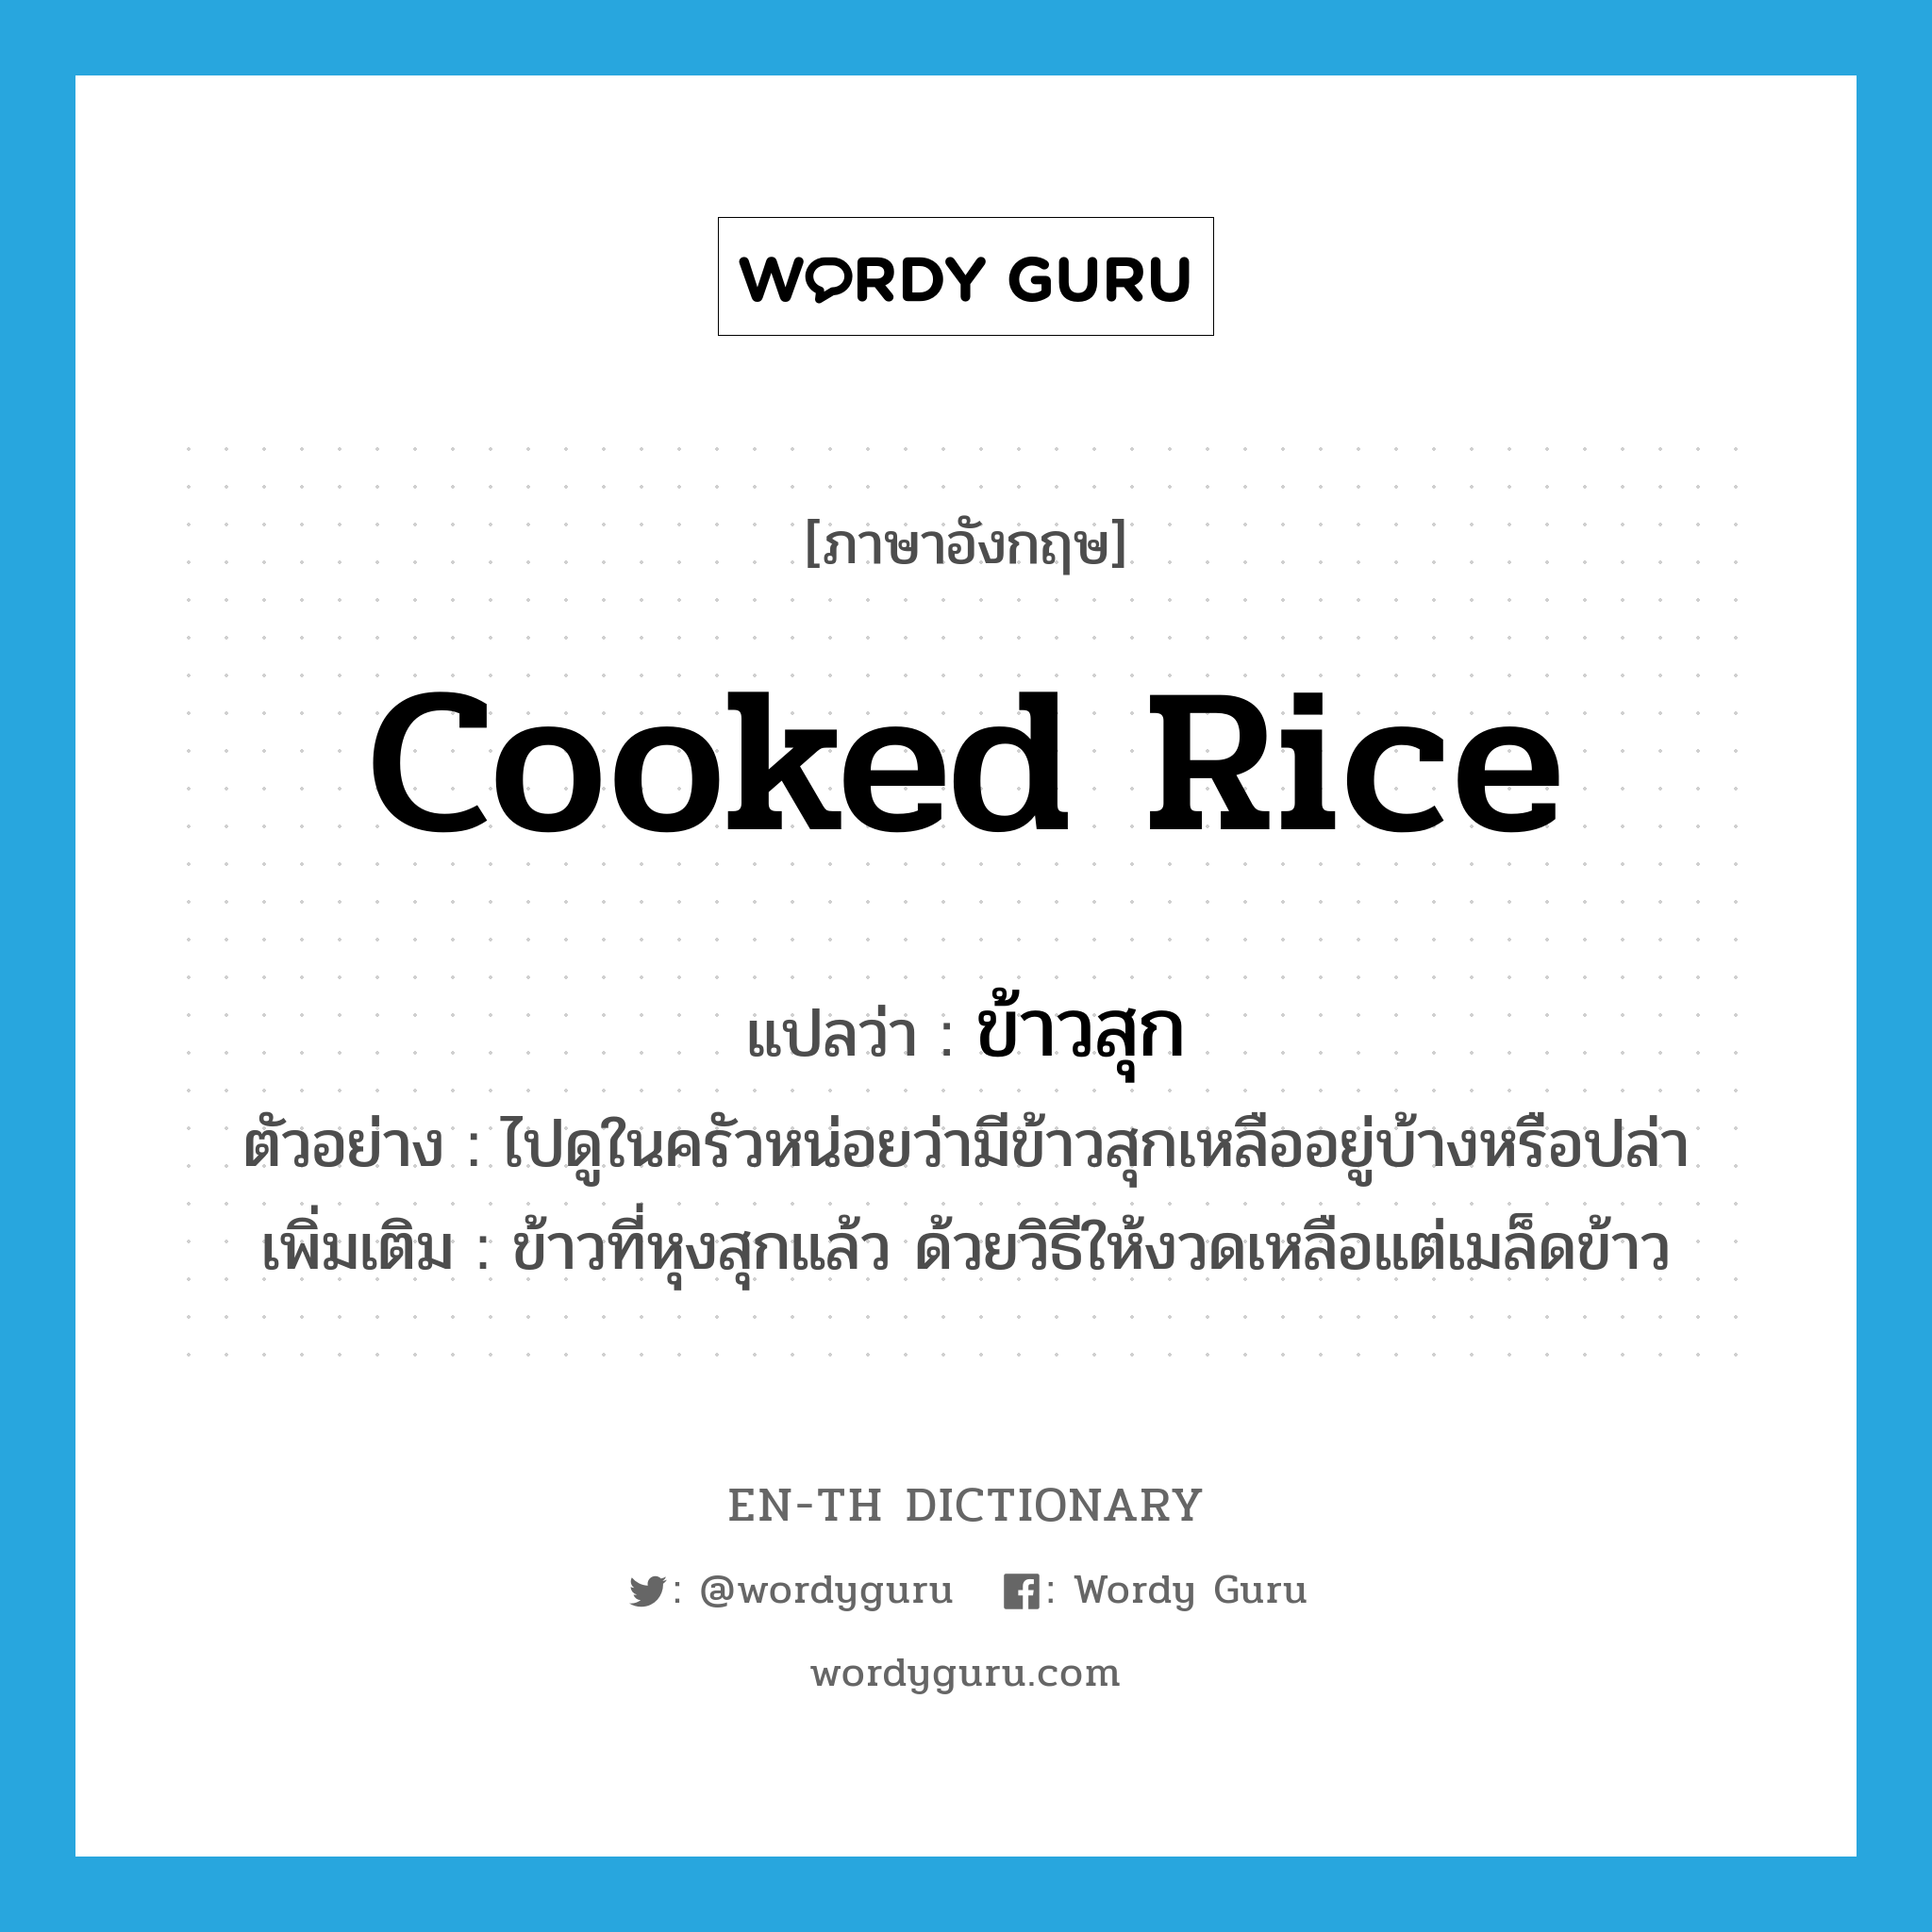 ข้าวสุก ภาษาอังกฤษ?, คำศัพท์ภาษาอังกฤษ ข้าวสุก แปลว่า cooked rice ประเภท N ตัวอย่าง ไปดูในครัวหน่อยว่ามีข้าวสุกเหลืออยู่บ้างหรือปล่า เพิ่มเติม ข้าวที่หุงสุกแล้ว ด้วยวิธีให้งวดเหลือแต่เมล็ดข้าว หมวด N